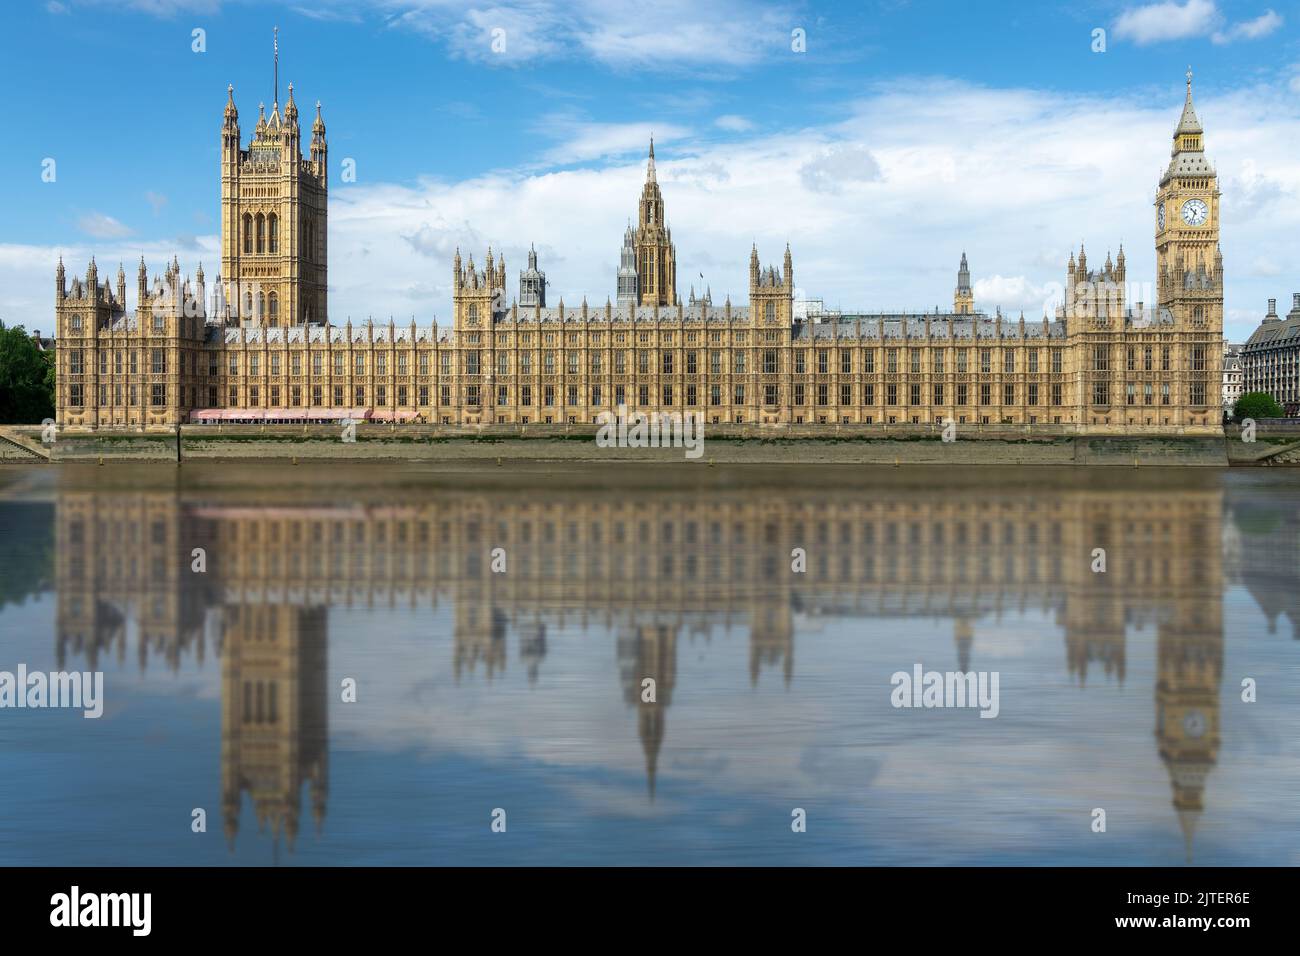 Casas del parlamento del Reino Unido en el palacio de Westminster, reflexiones de agua en el río Támesis, Londres Foto de stock